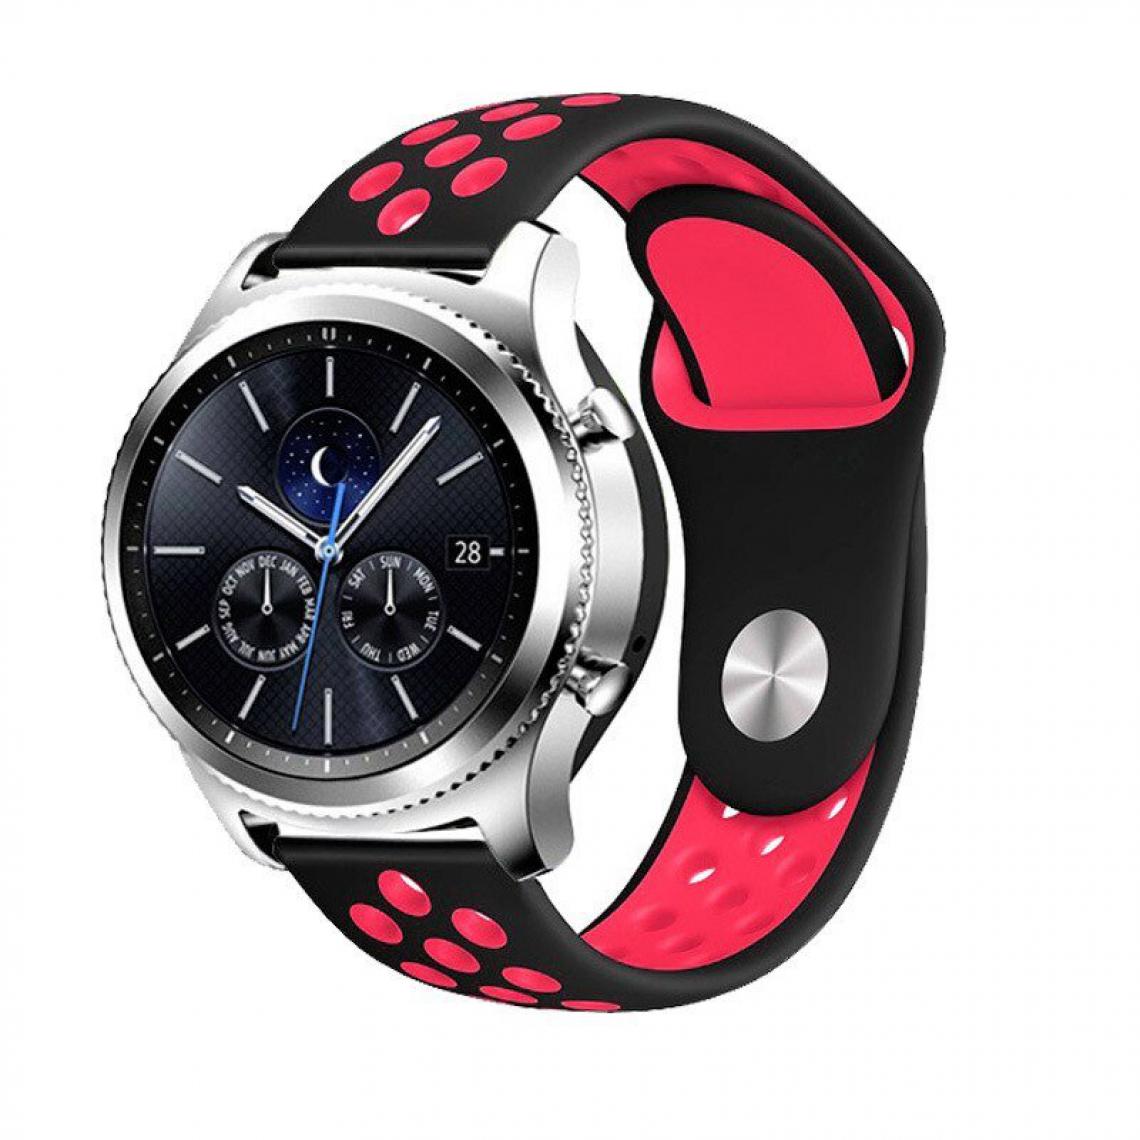 Phonecare - Bracelet SportyStyle pour Samsung Galaxy Watch Active - Noir / rouge - Autres accessoires smartphone